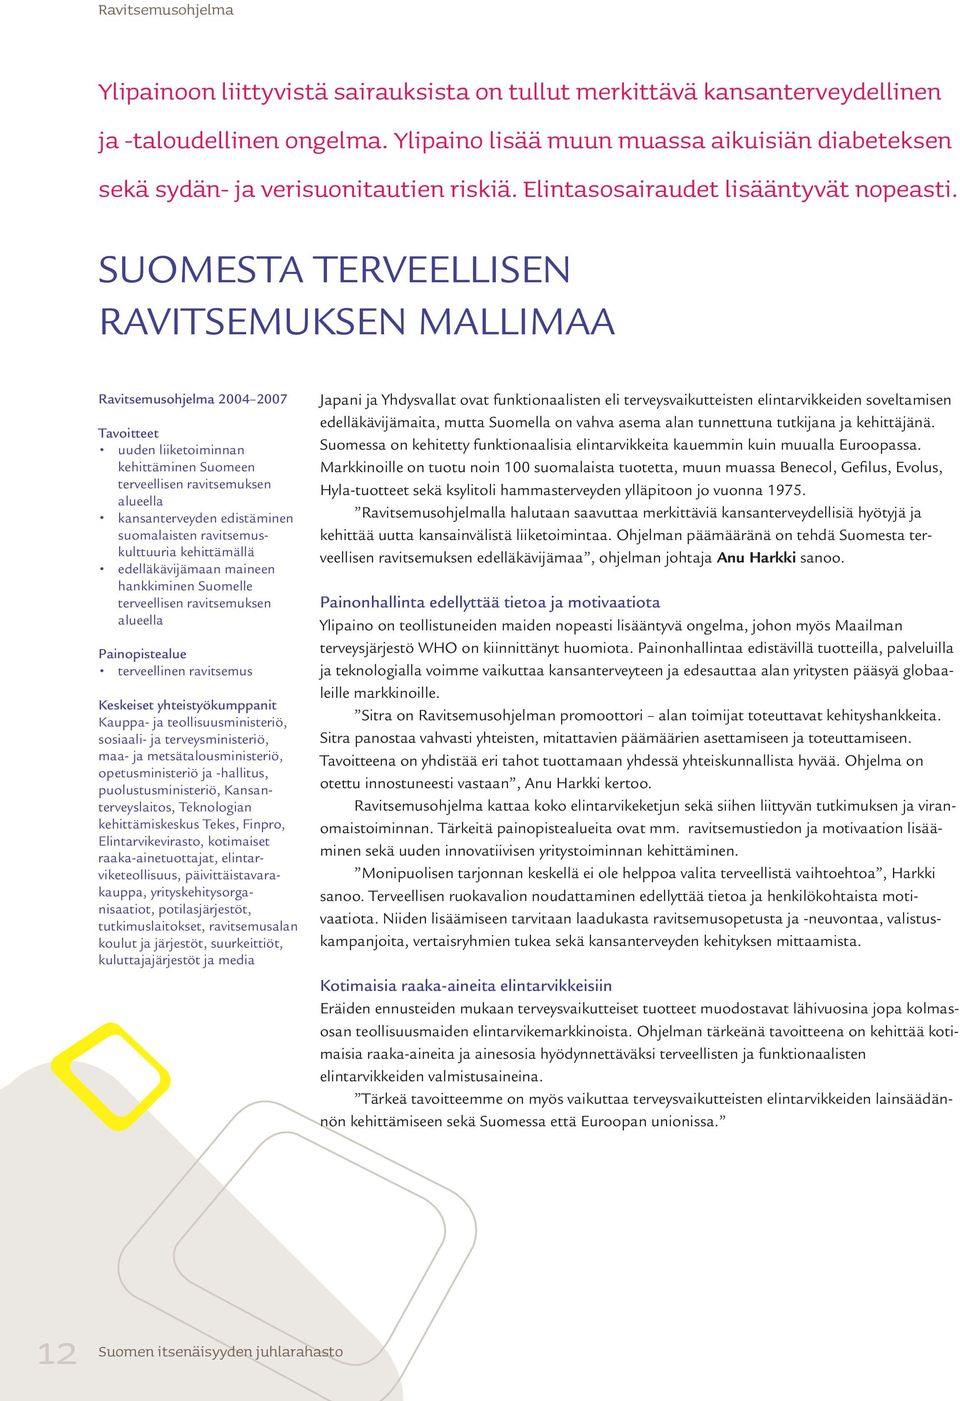 SUOMESTA TERVEELLISEN RAVITSEMUKSEN MALLIMAA Ravitsemusohjelma 2004 2007 Tavoitteet uuden liiketoiminnan kehittäminen Suomeen terveellisen ravitsemuksen alueella kansanterveyden edistä minen